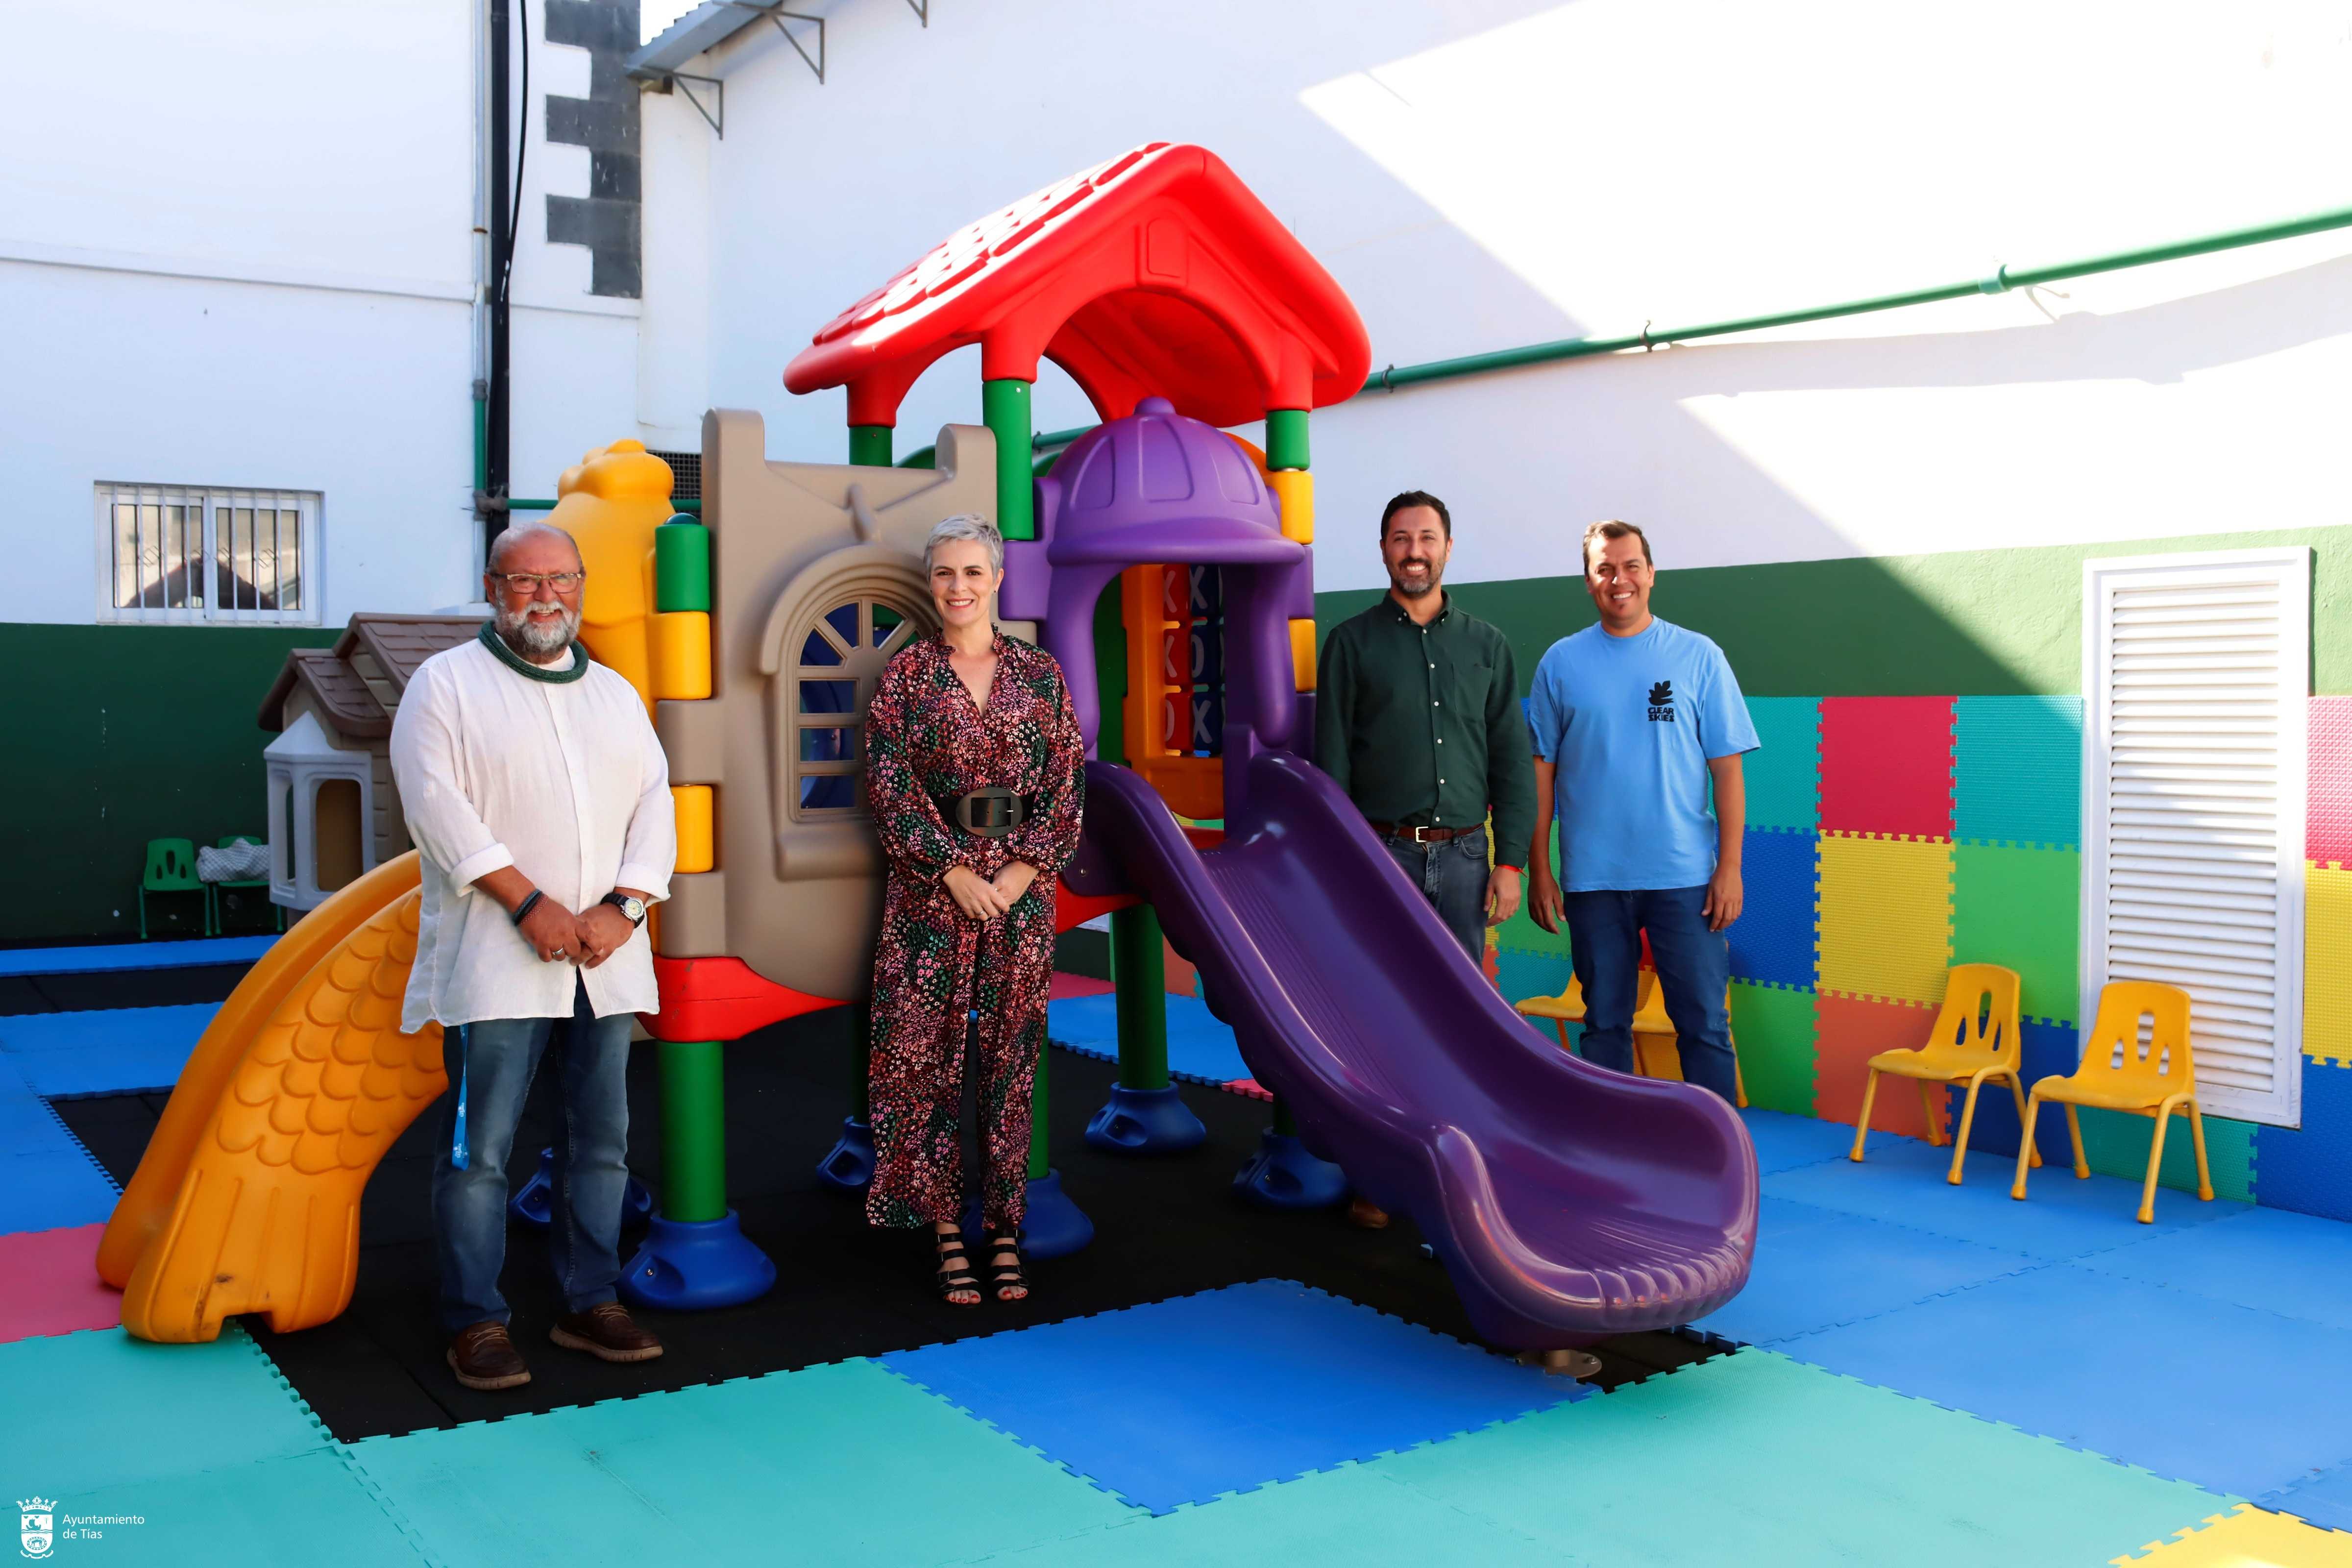 Fundación DinoSol dona un parque infantil al CEIP Alcalde Rafael Cedrés de Tías